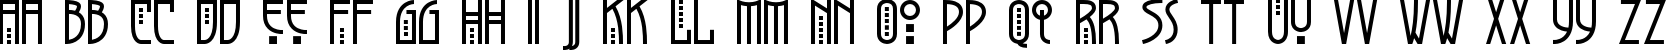 Пример написания английского алфавита шрифтом Greyhound